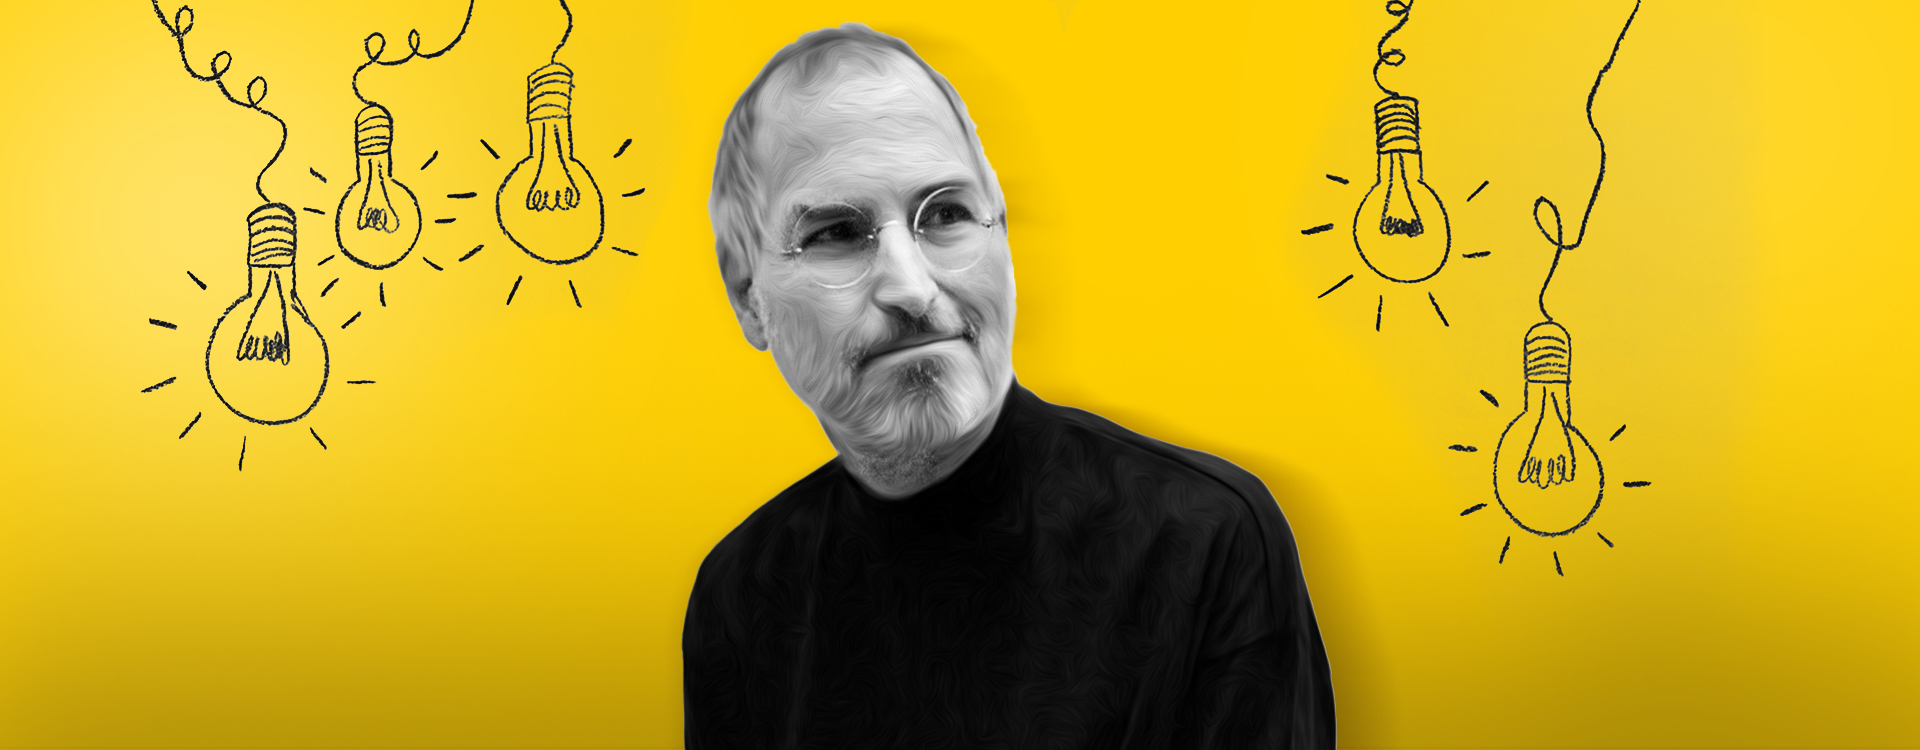 Entrepreneurial lessons from Steve Jobs